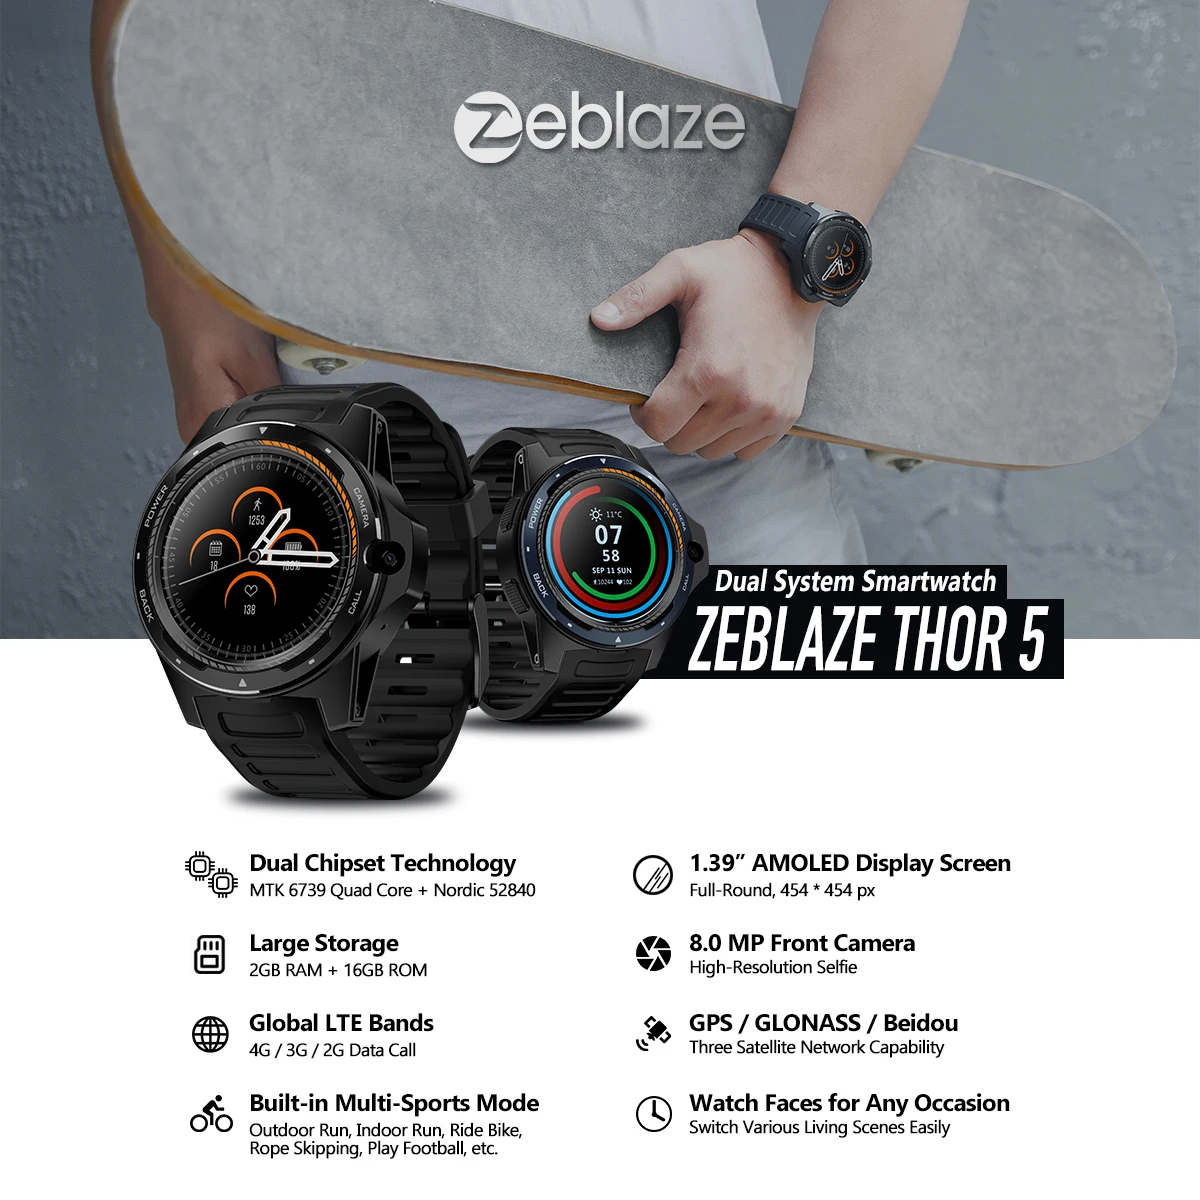 Zeblaze Thor 5 новая 1,39 дюймовая двойная система 4G Смарт-часы Android gps wifi сердечного ритма 8MP камера 545 мАч спортивные умные часы PK LEM9